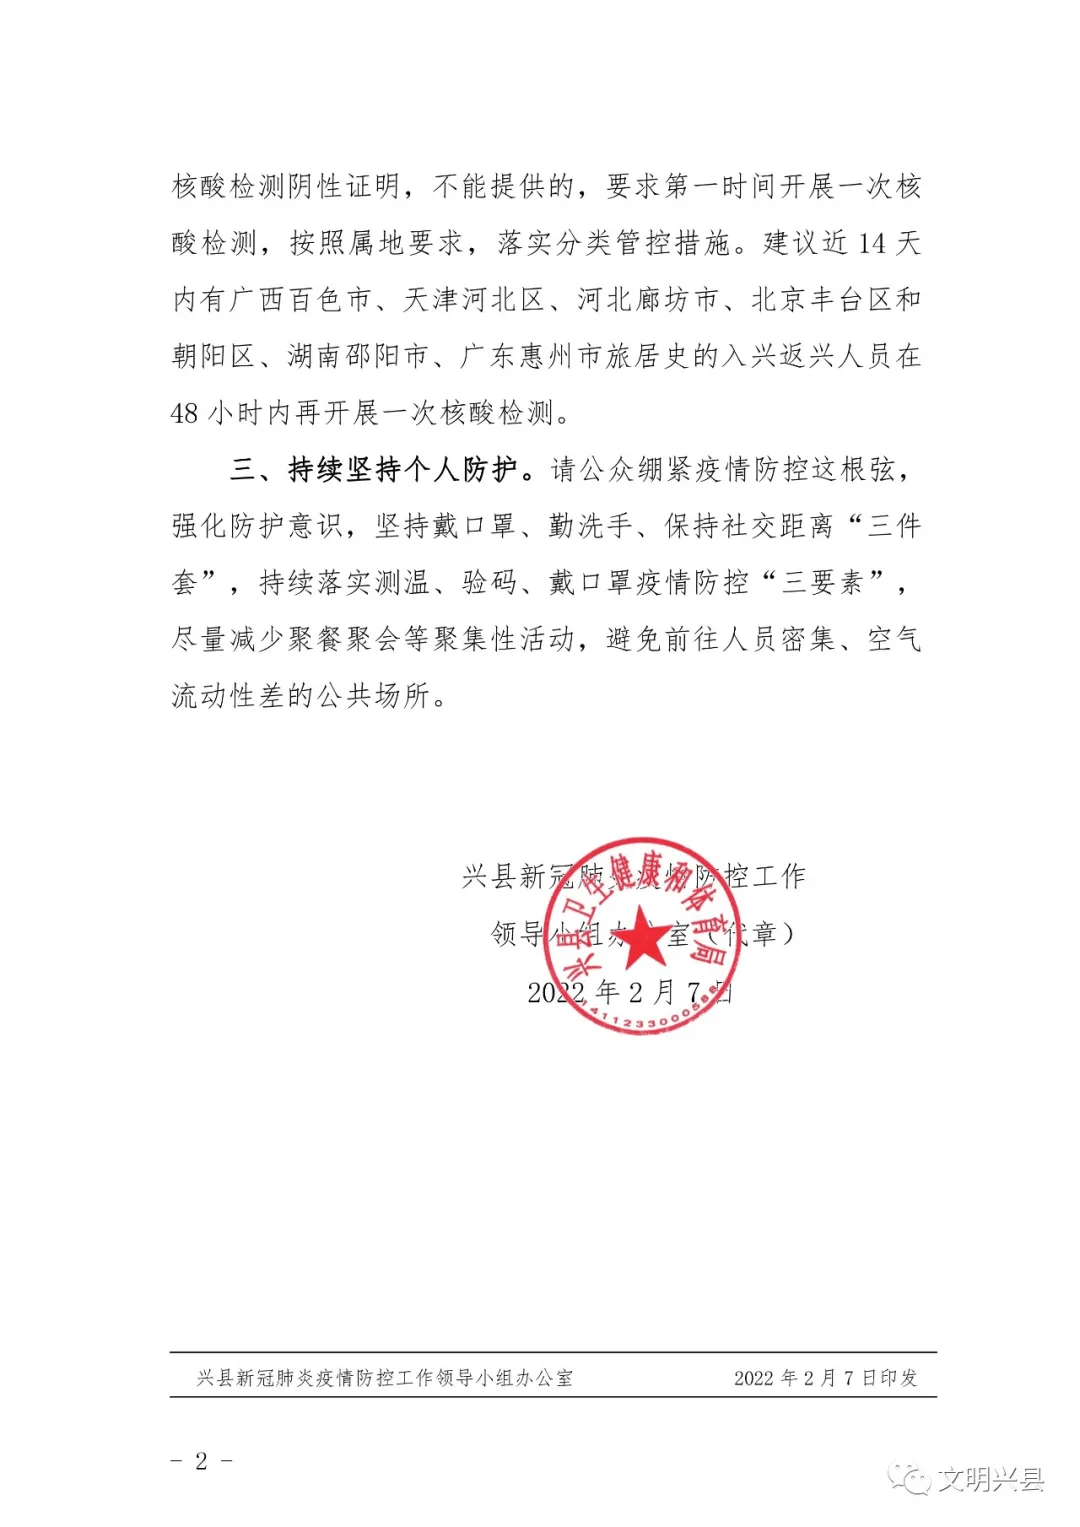 领导小组|兴县疫情防控办健康提示